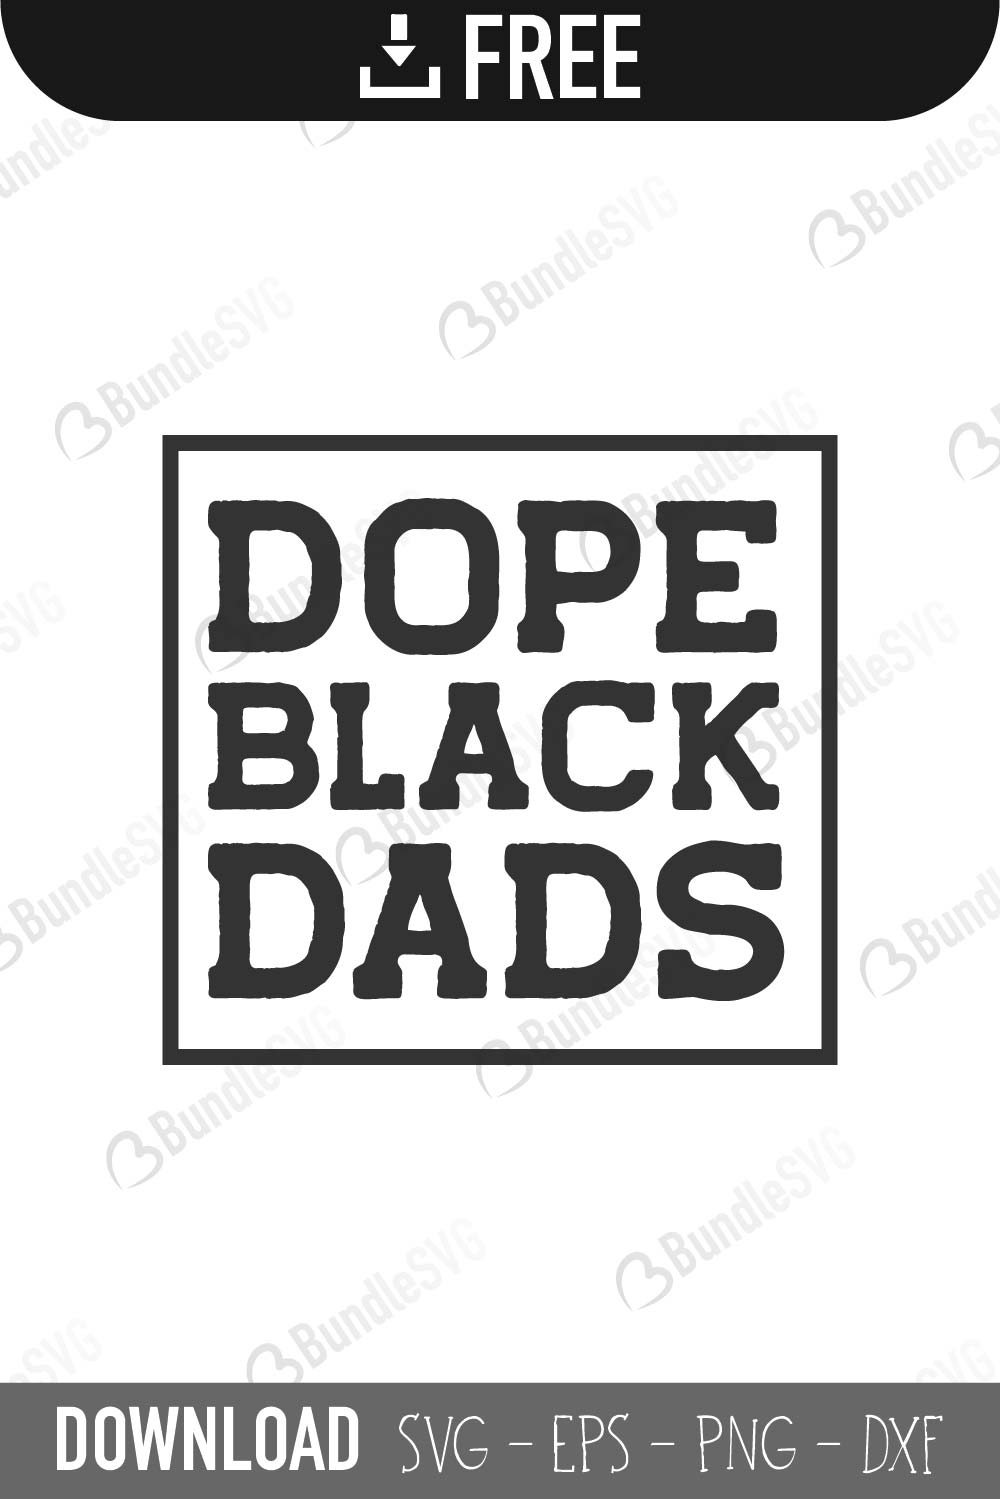 Download Dope Black Dads SVG Cut Files Free Download | BundleSVG